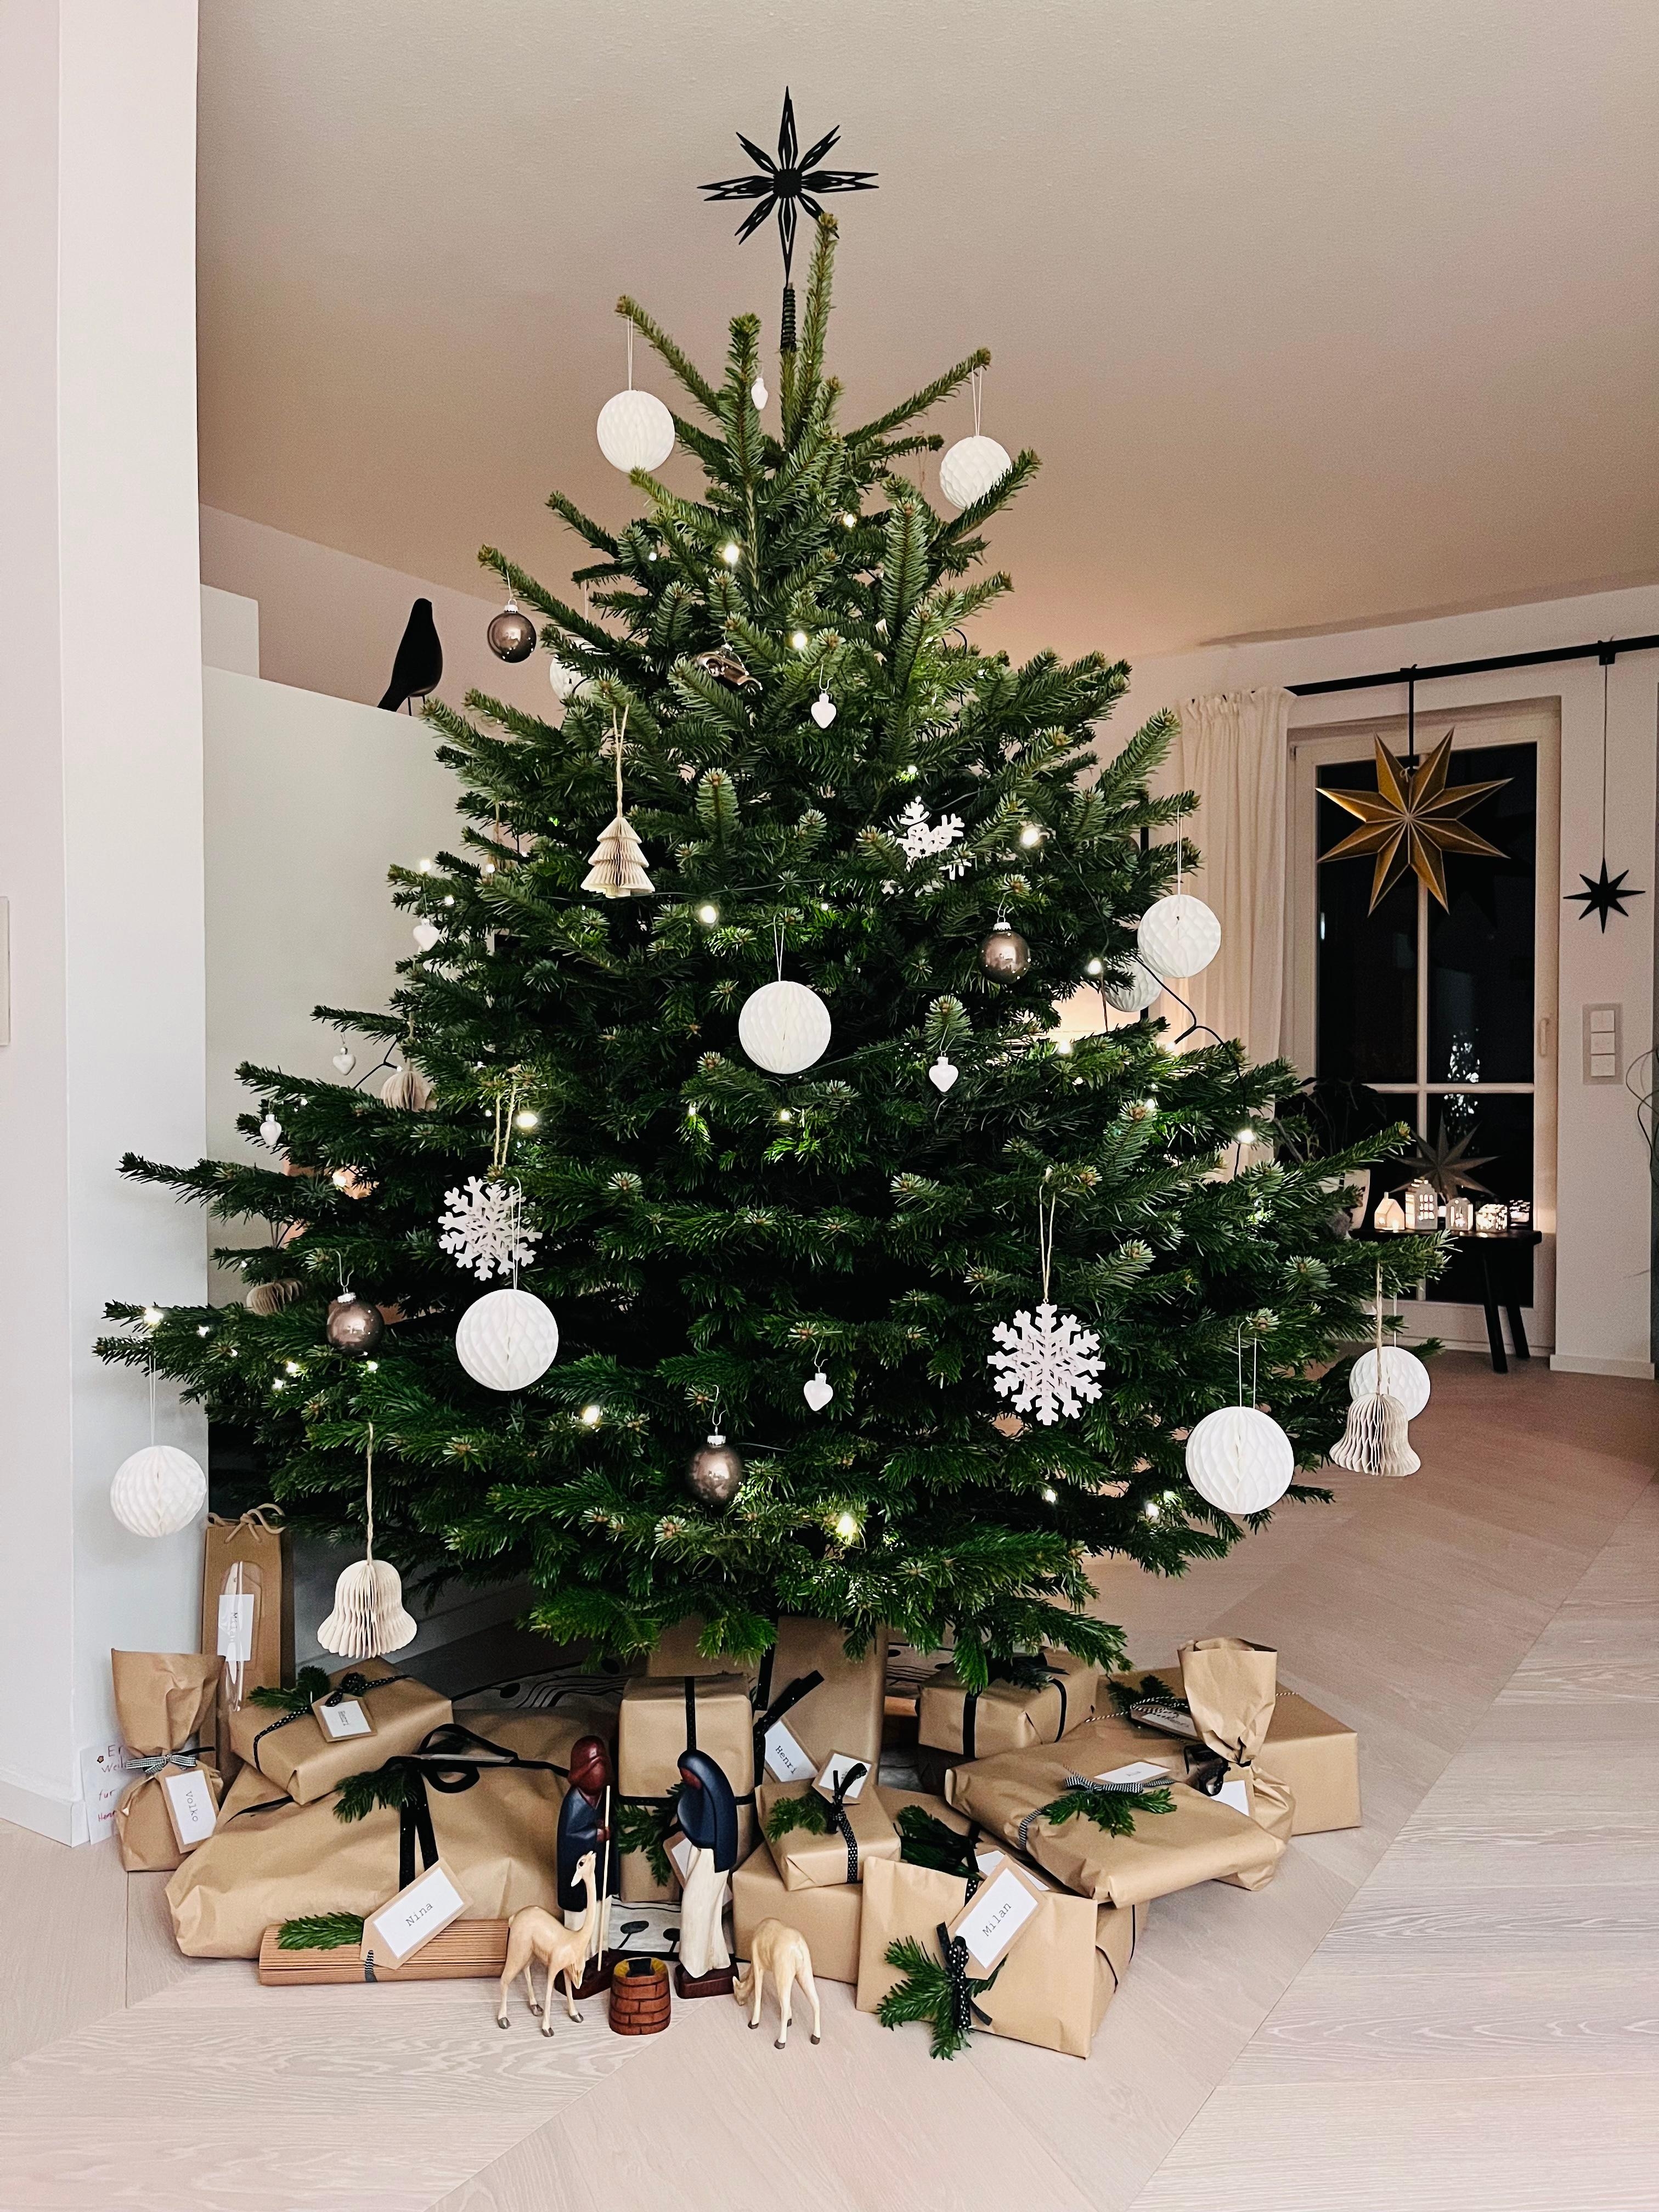 Frohe Weihnachten 🎄! #weihnachten #tannenbaum #christbaum #scandistyle #couchliebt